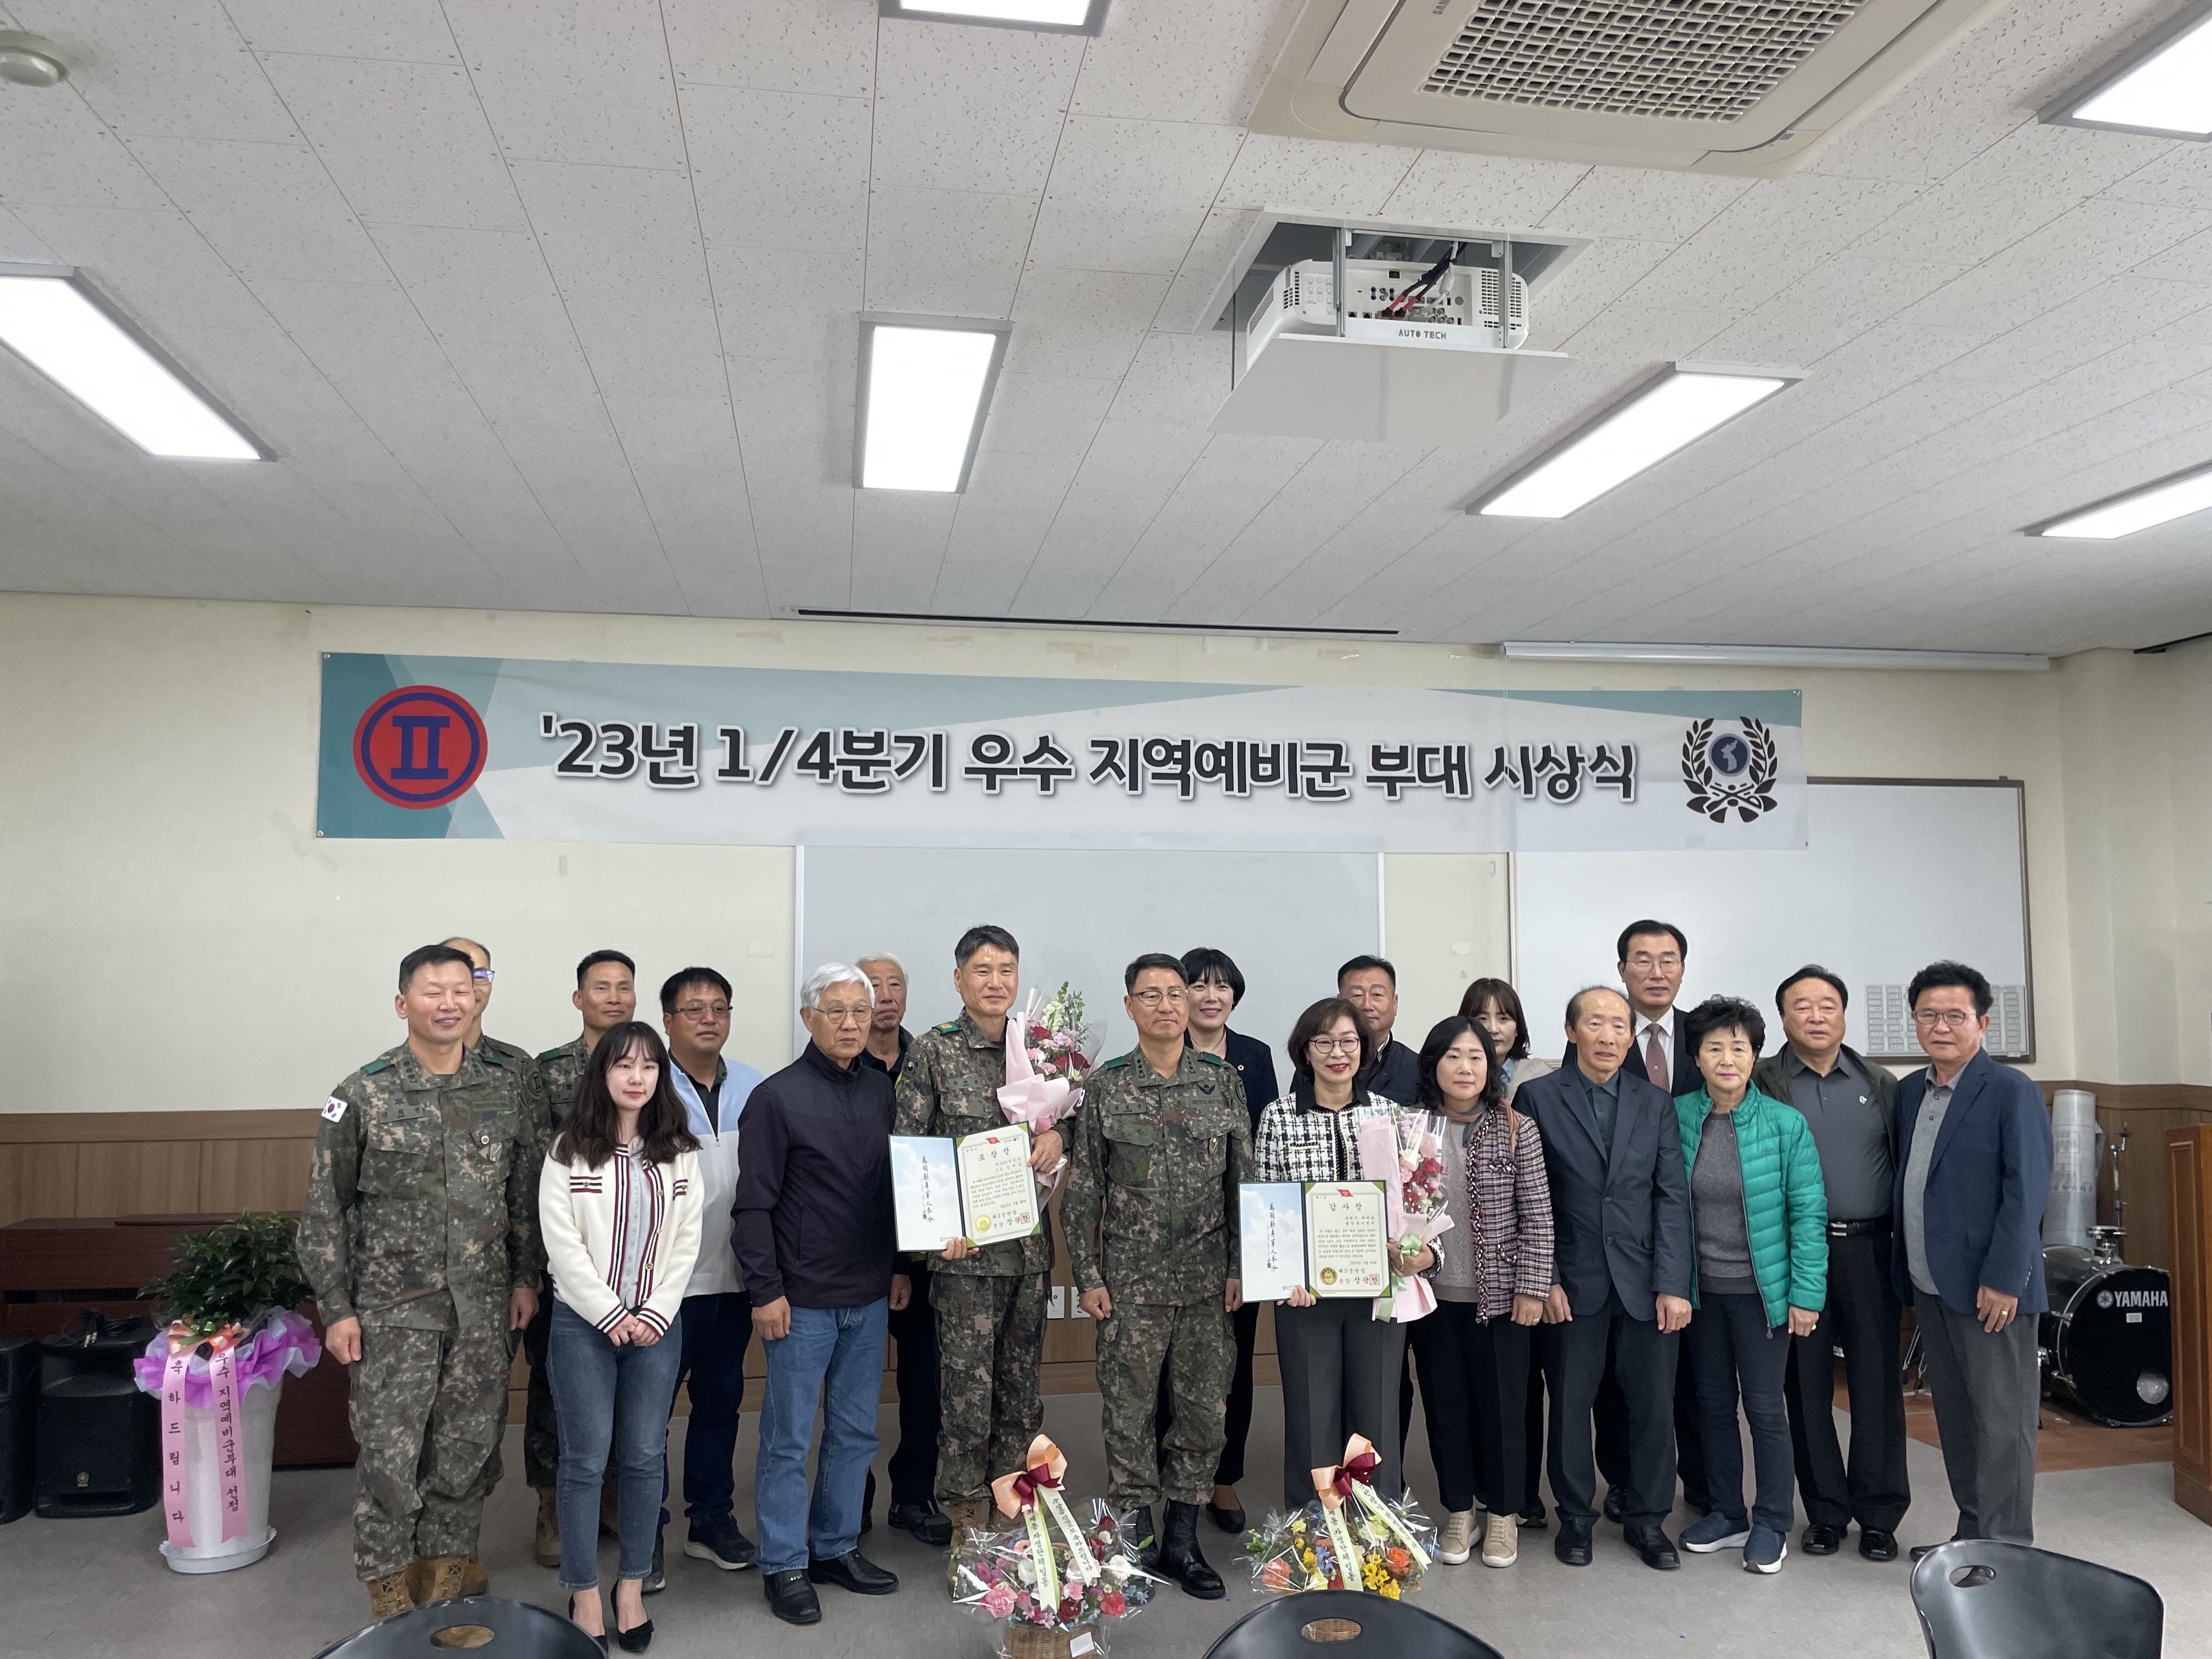 '23년 1/4분기 우수 지역예비군 부대 선정에 따른 시상식 개최